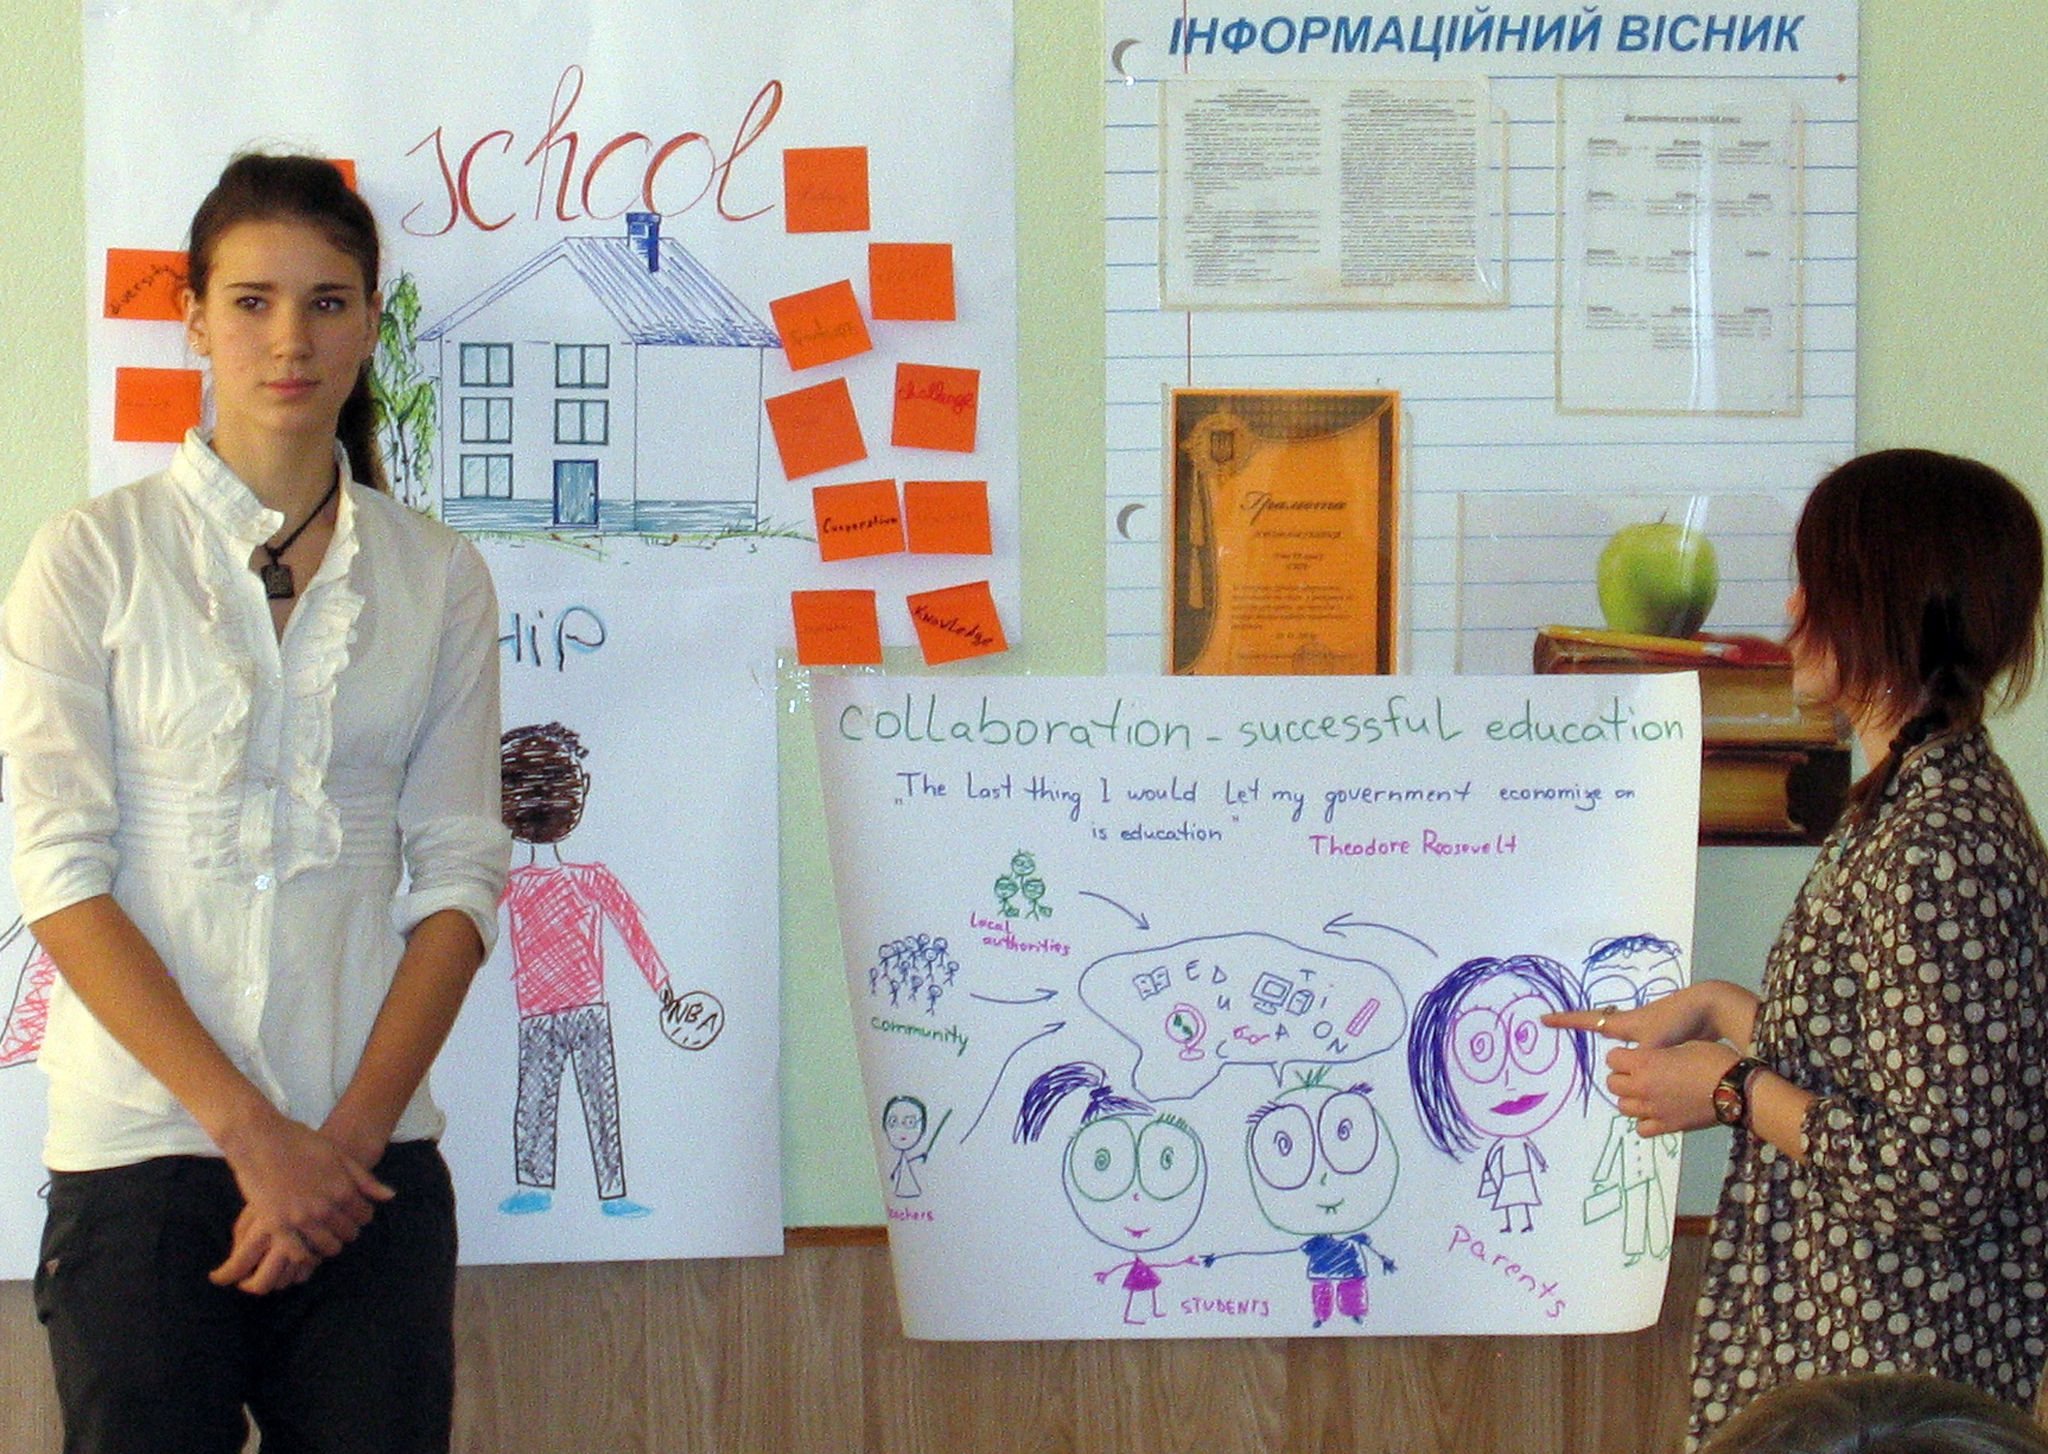 Präsentation in einer Schule in der Nähe von Kiew.jpg